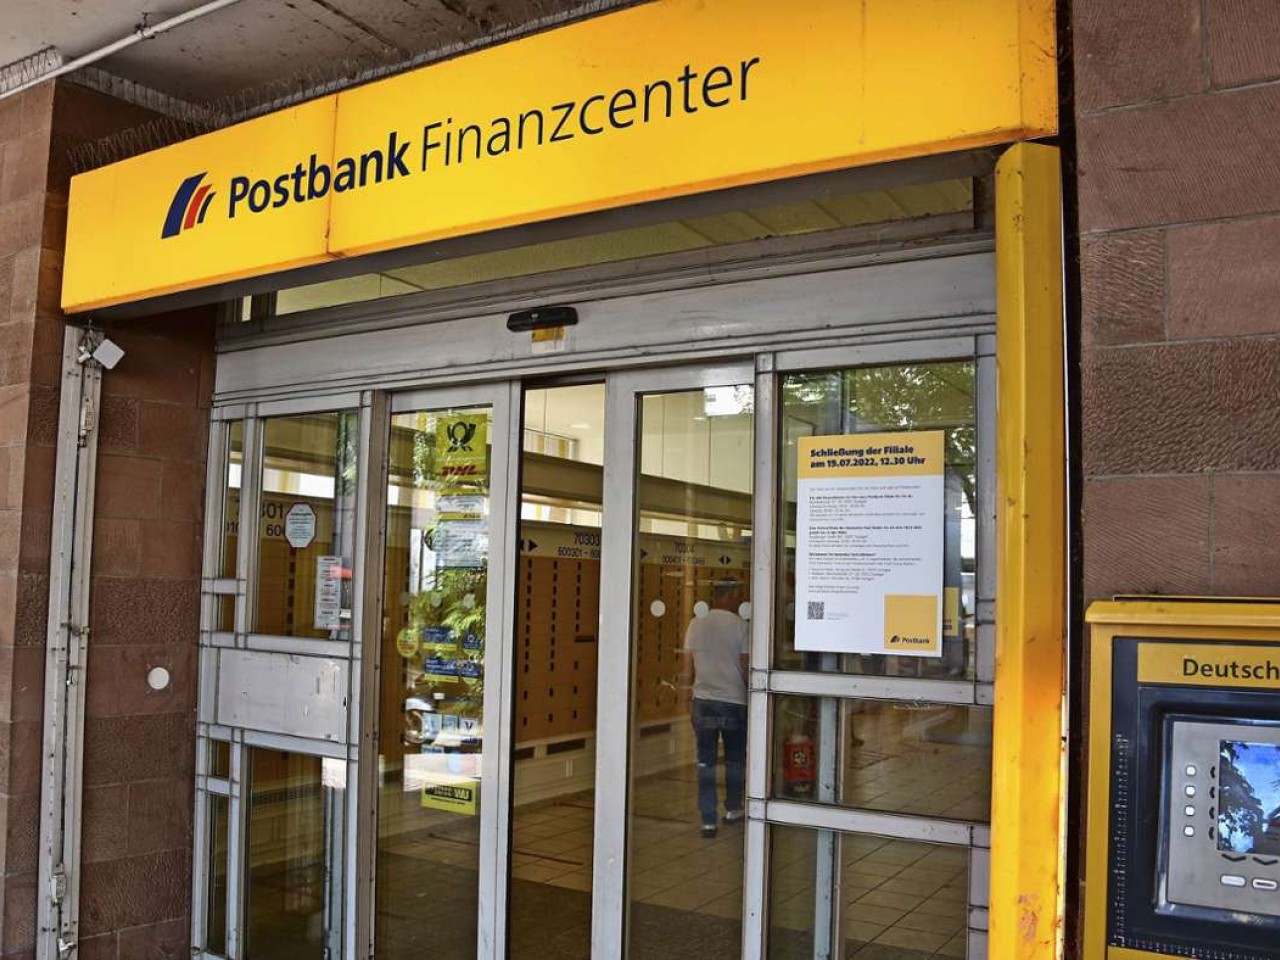 Post in Untertürkheim: Zentrales Postbank-Center schließt